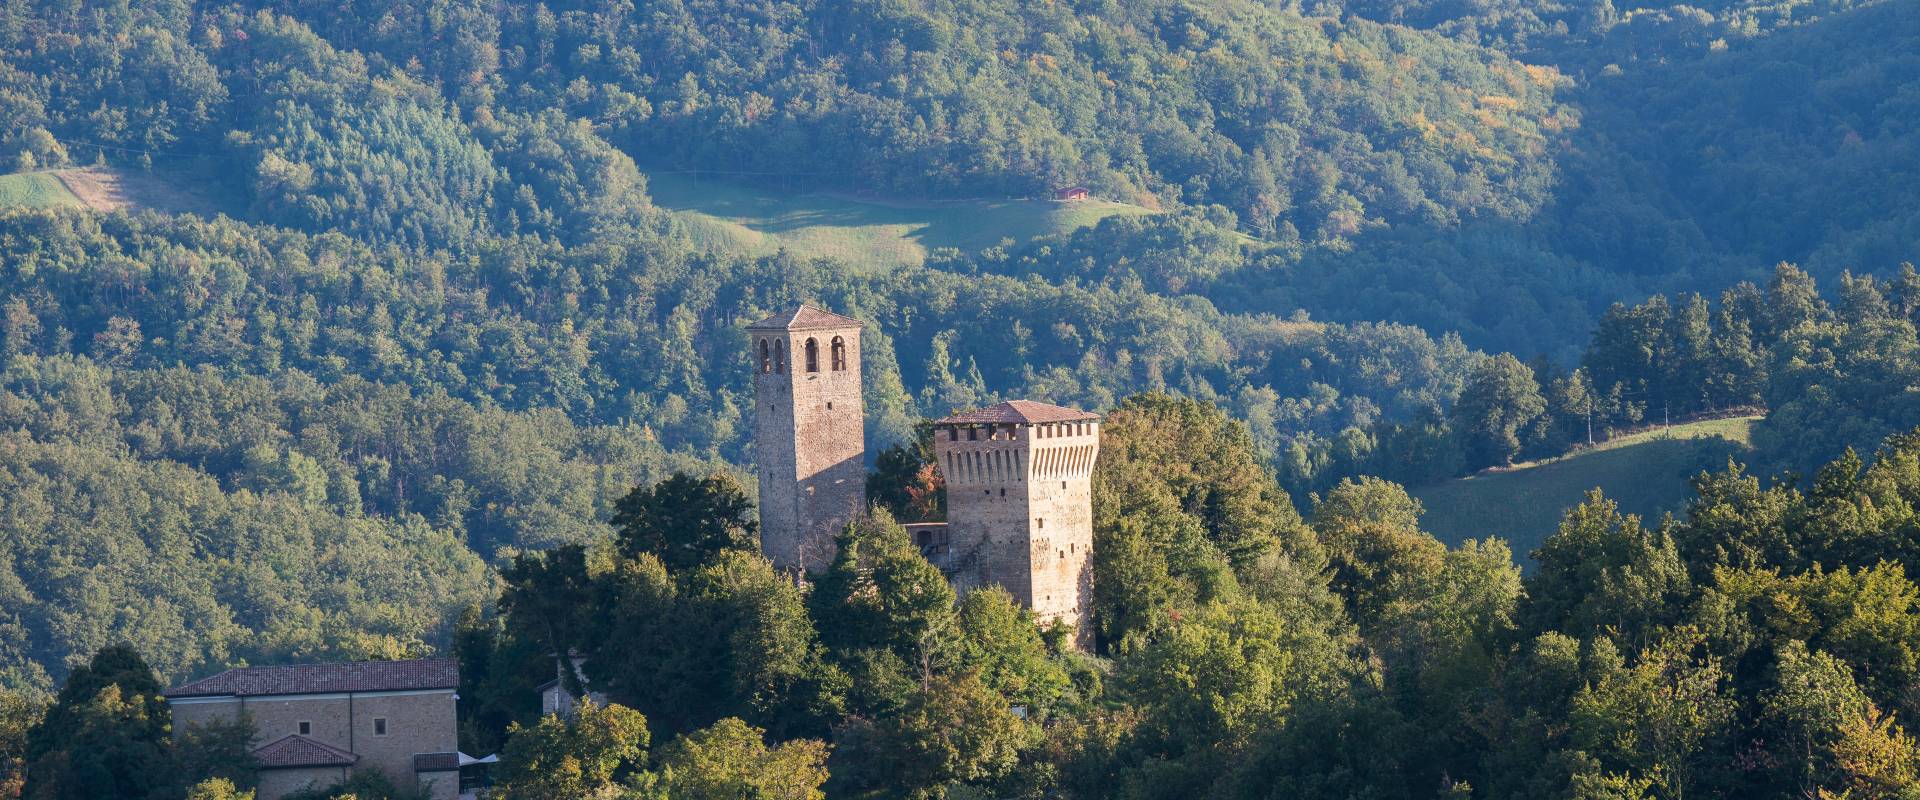 Il Castello di Sarzano foto di Lugarex